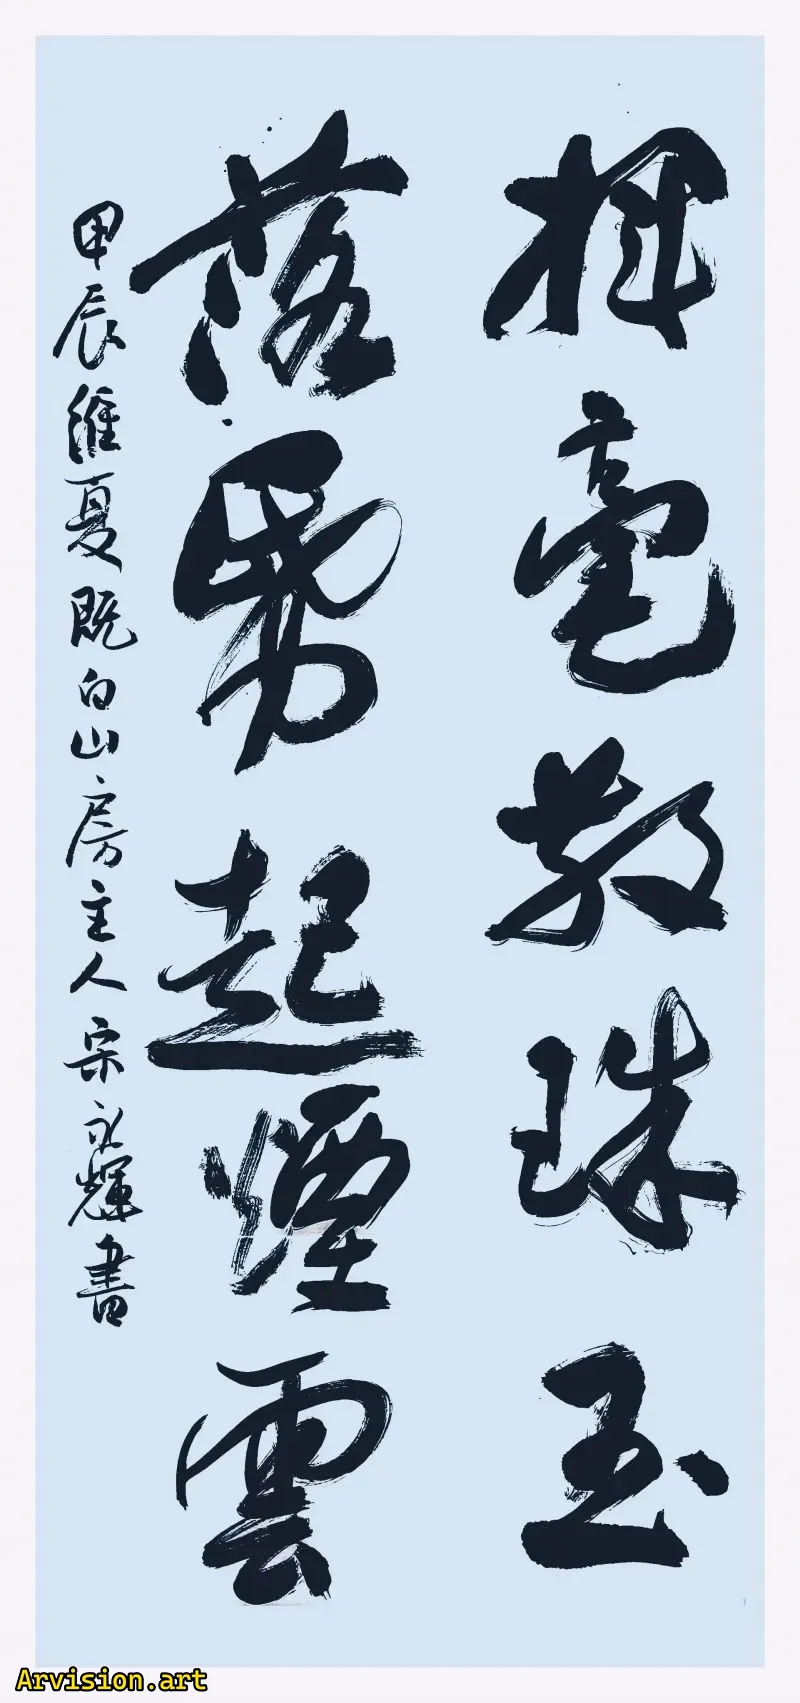 Las obras de caligrafía de Song Yonghui agitan perlas y Jade dispersos.